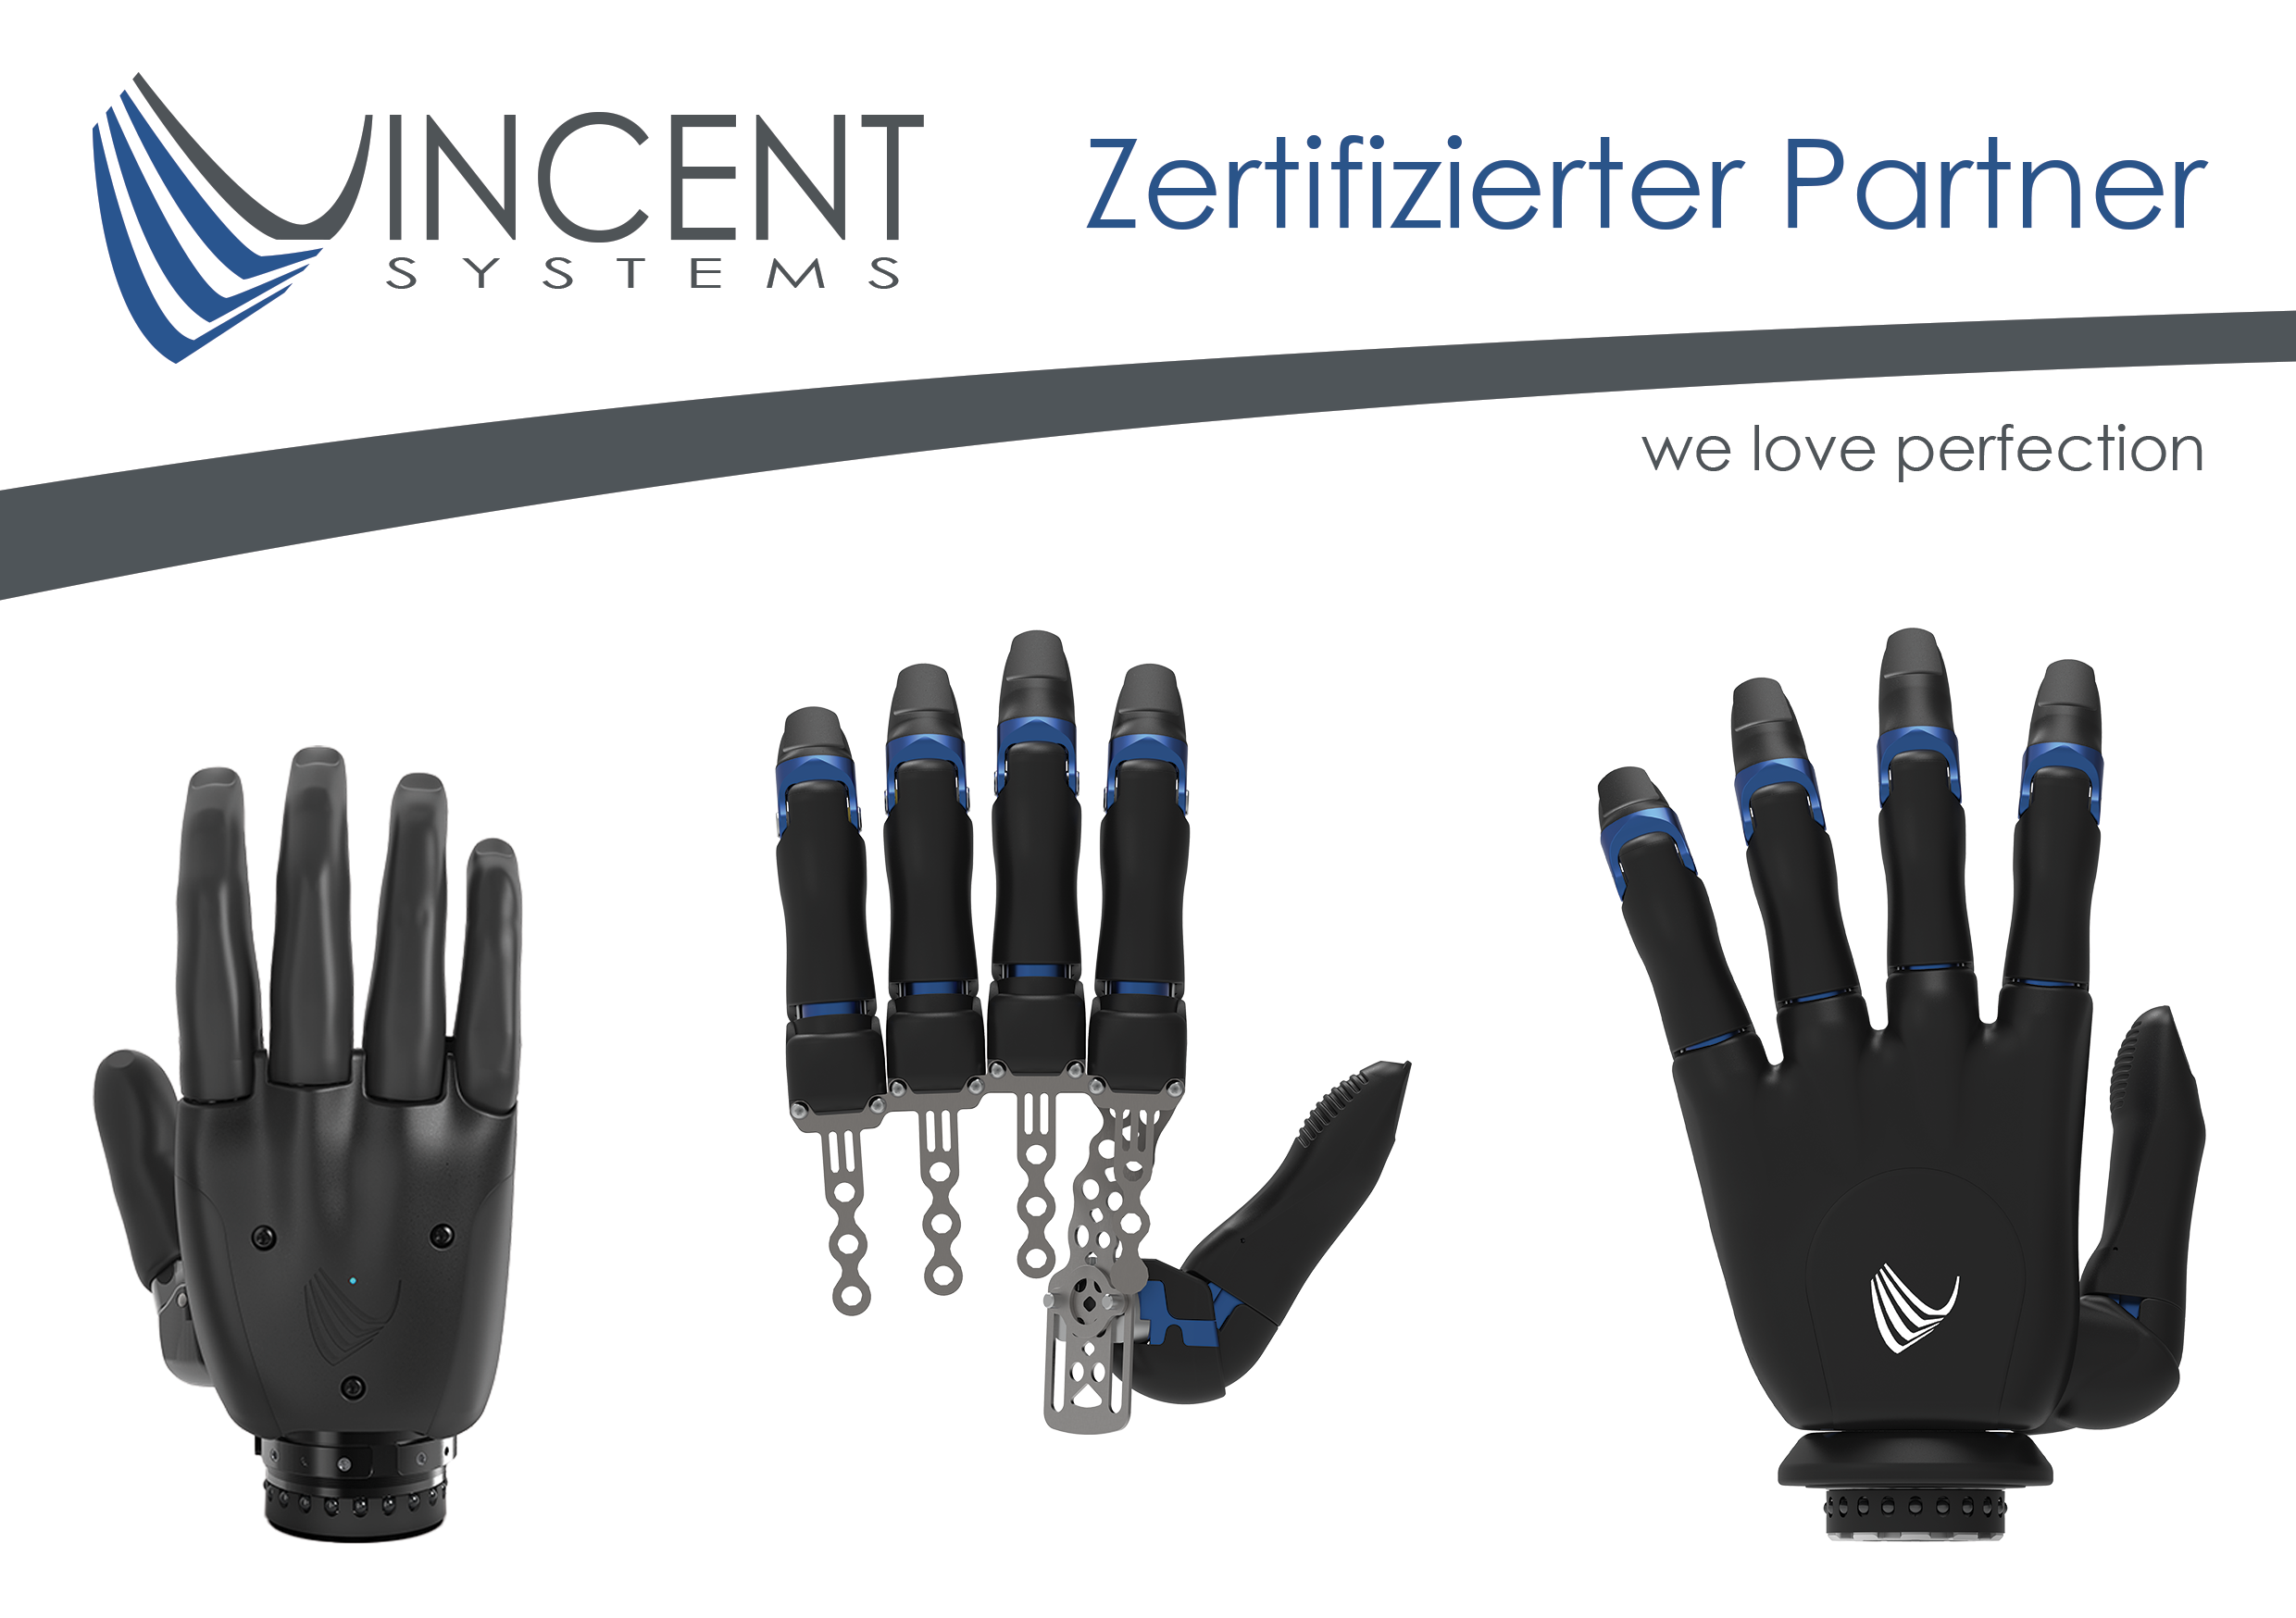 Bionische Armprothesen von Vincent Systems